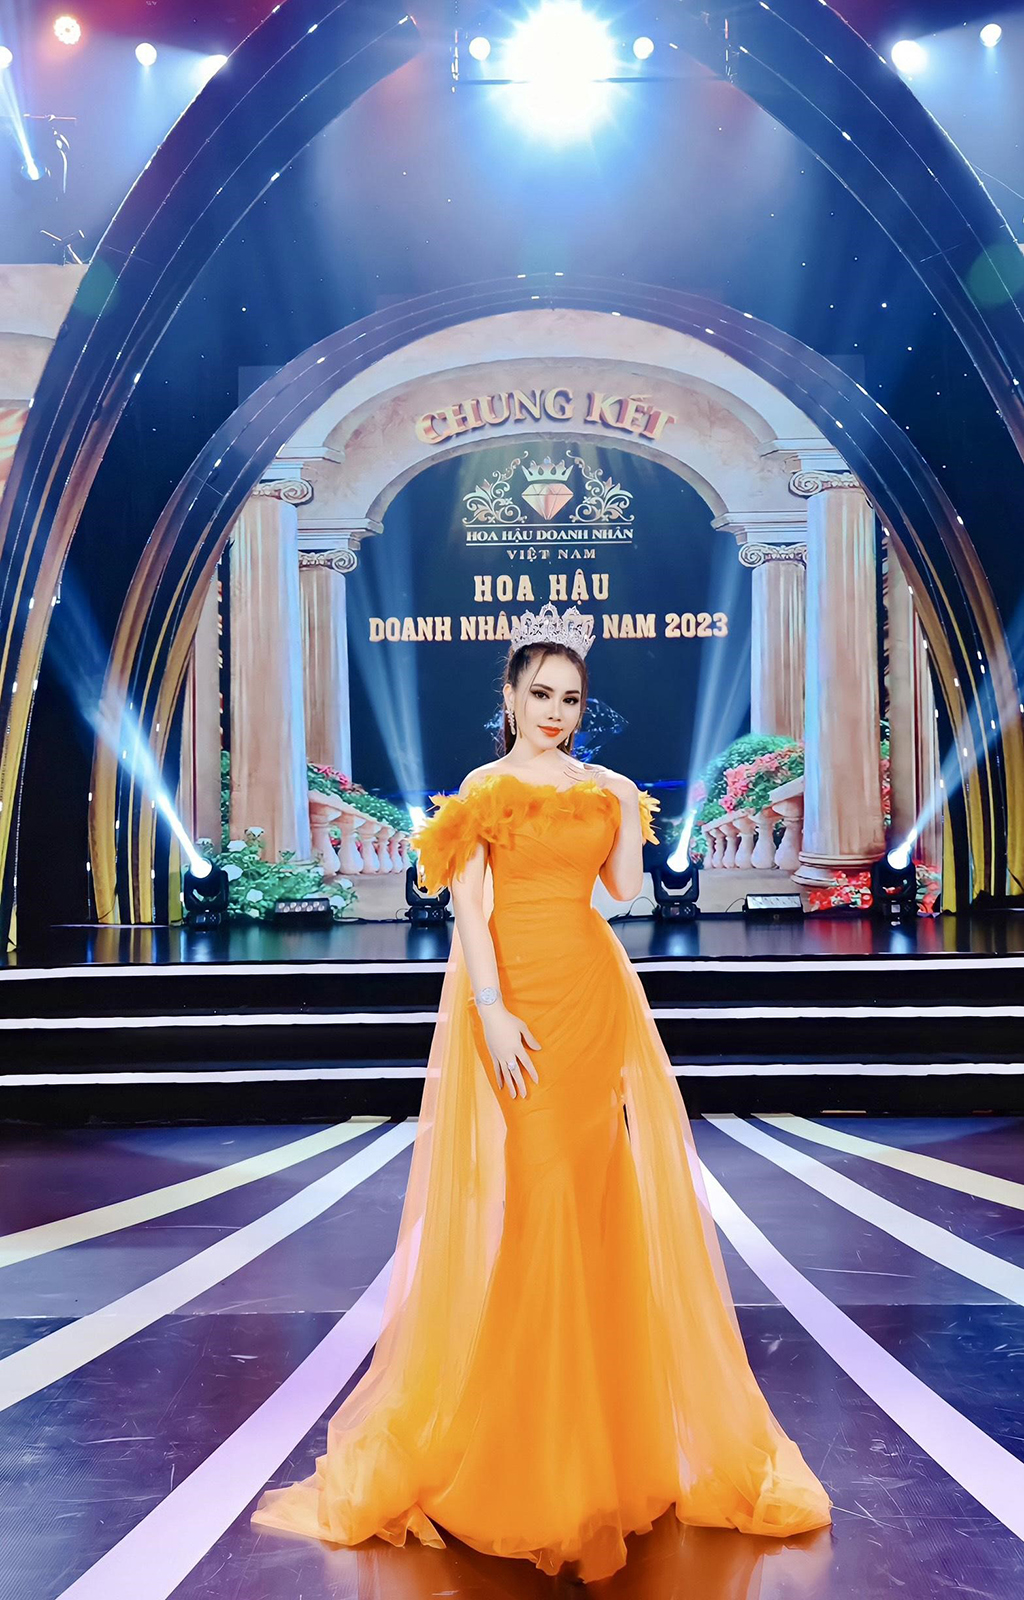 Phương Nhi hé lộ 2 thiết kế dạ hội cho đêm chung kết Miss International 2023